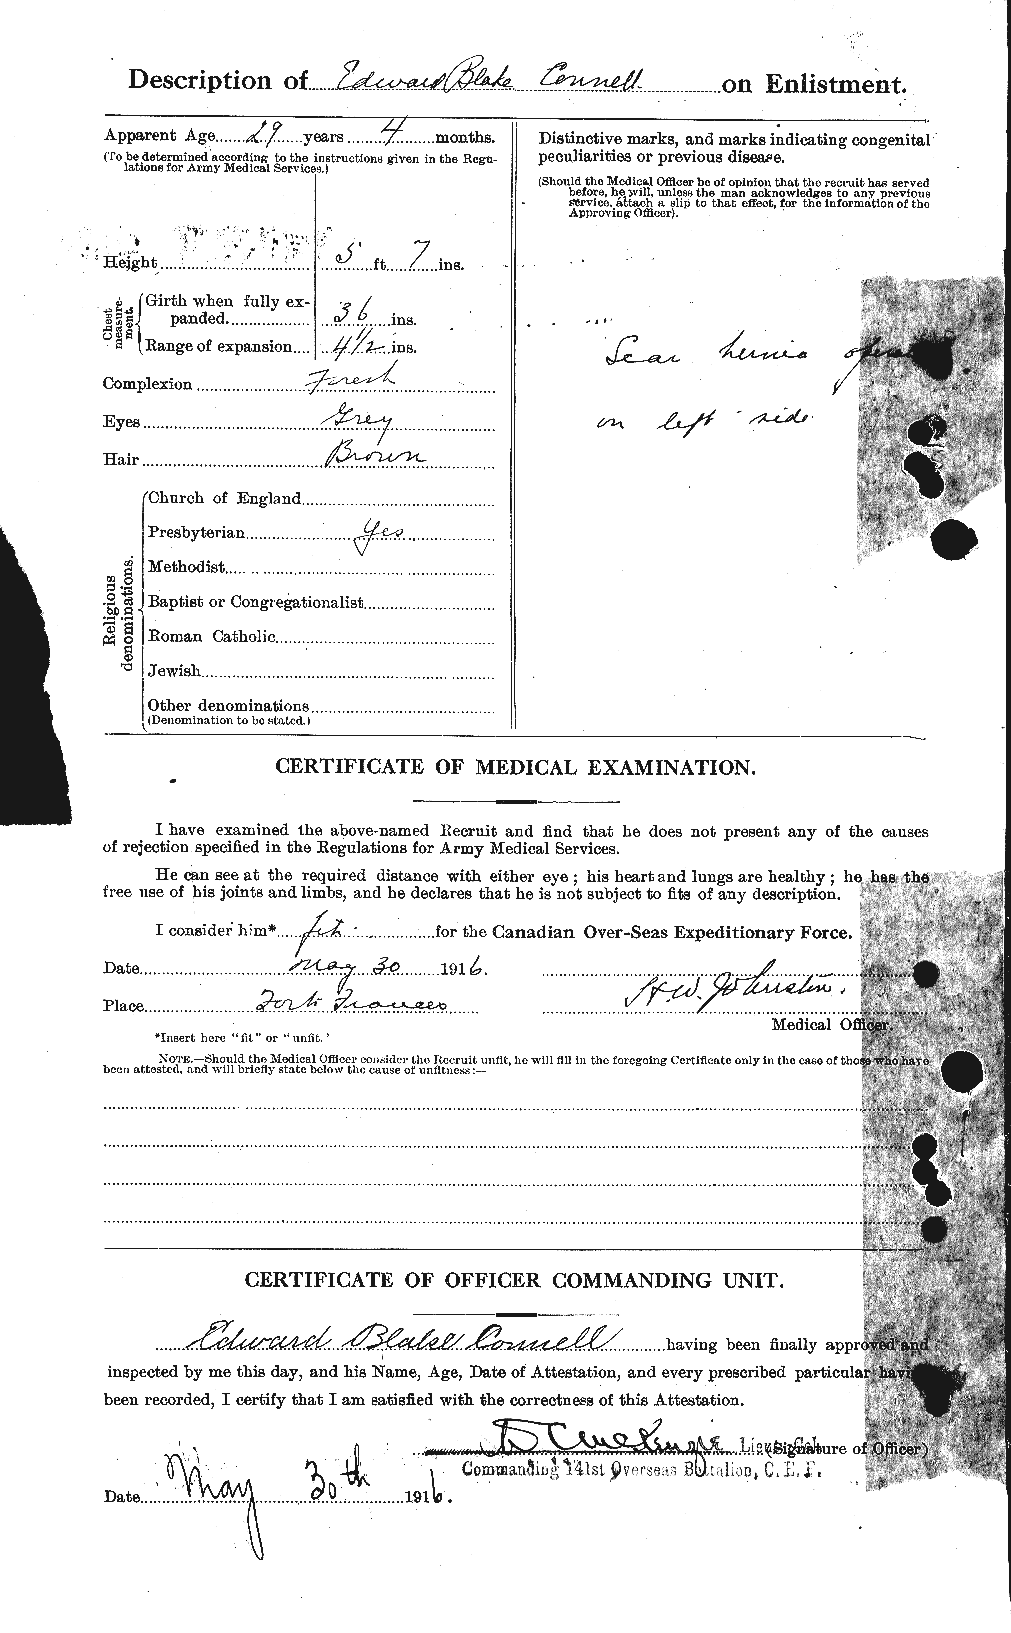 Dossiers du Personnel de la Première Guerre mondiale - CEC 069651b